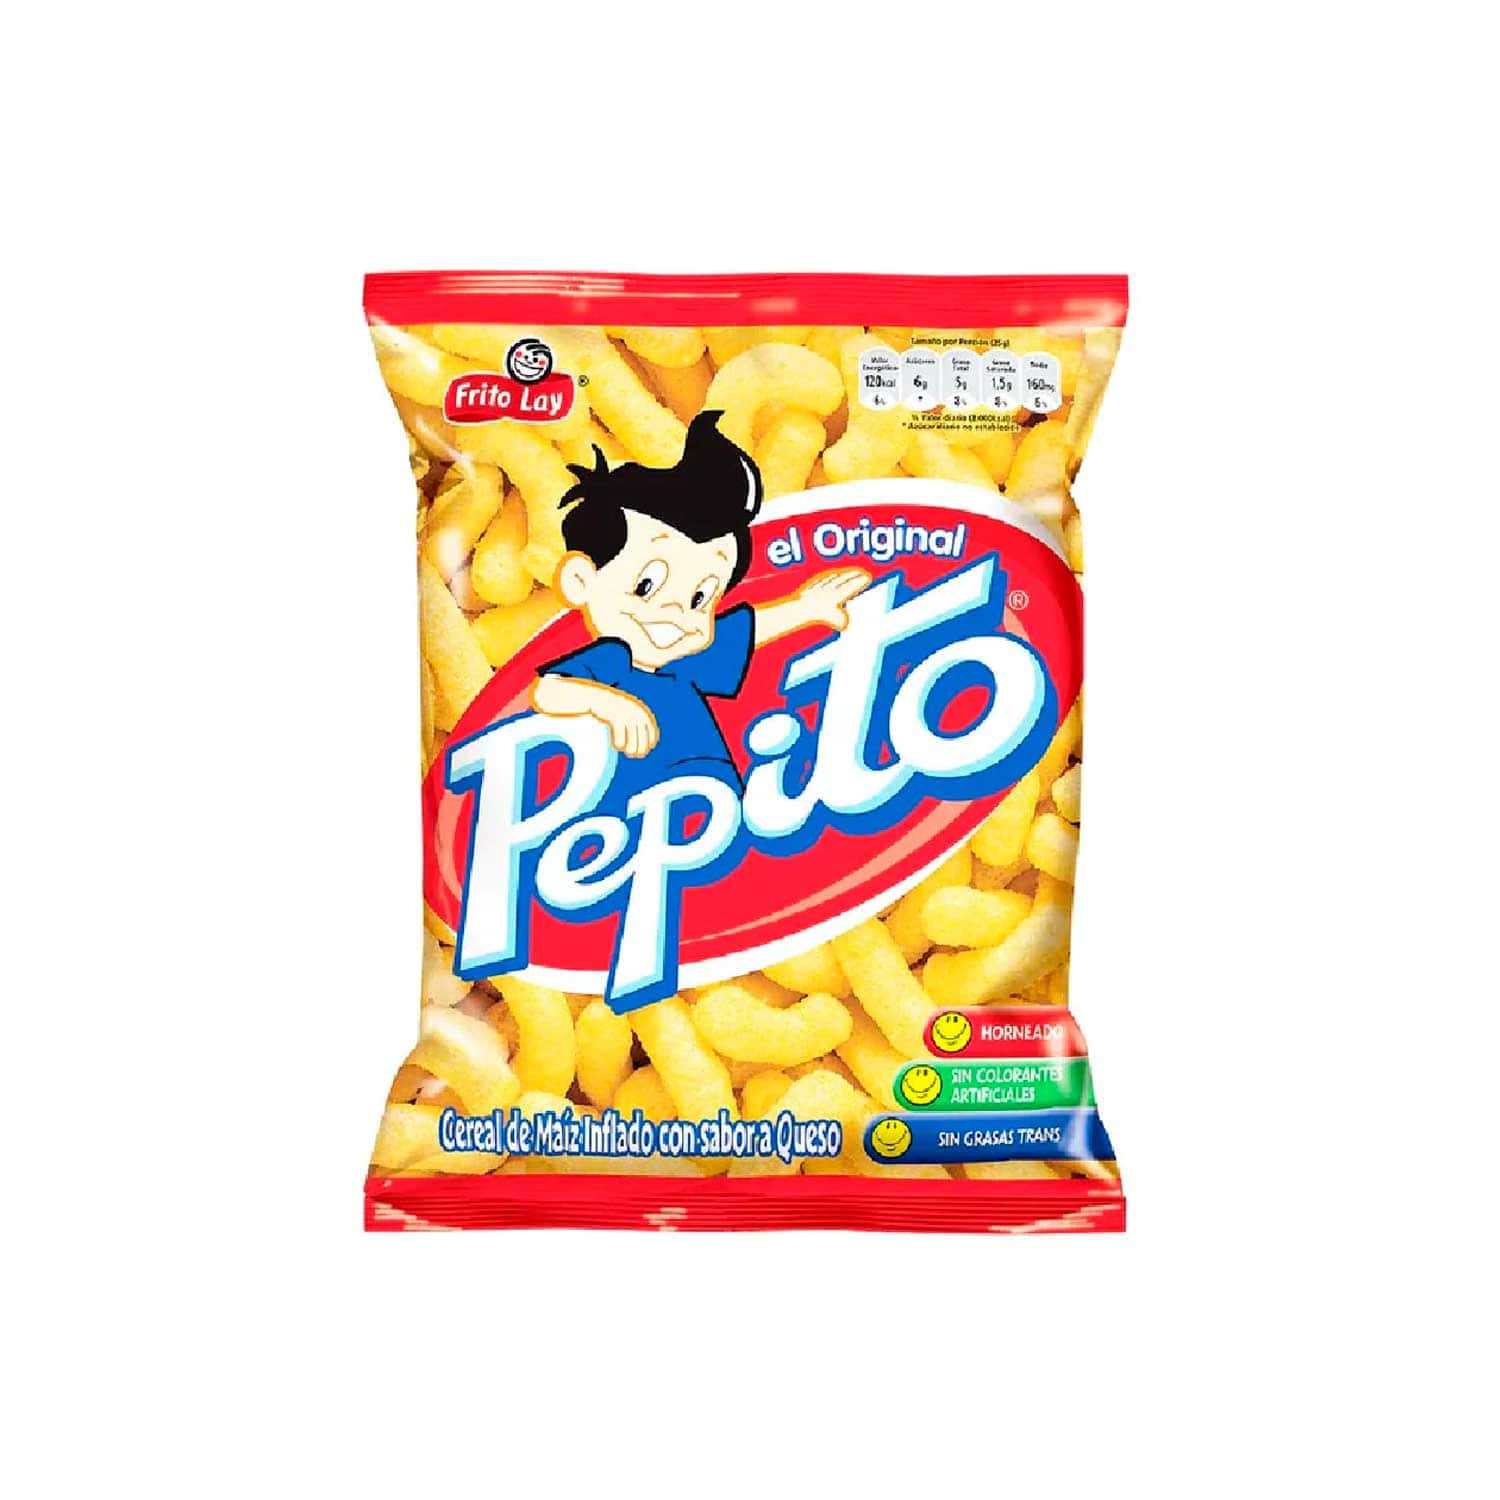 Pepito Frito Lay. 25 g